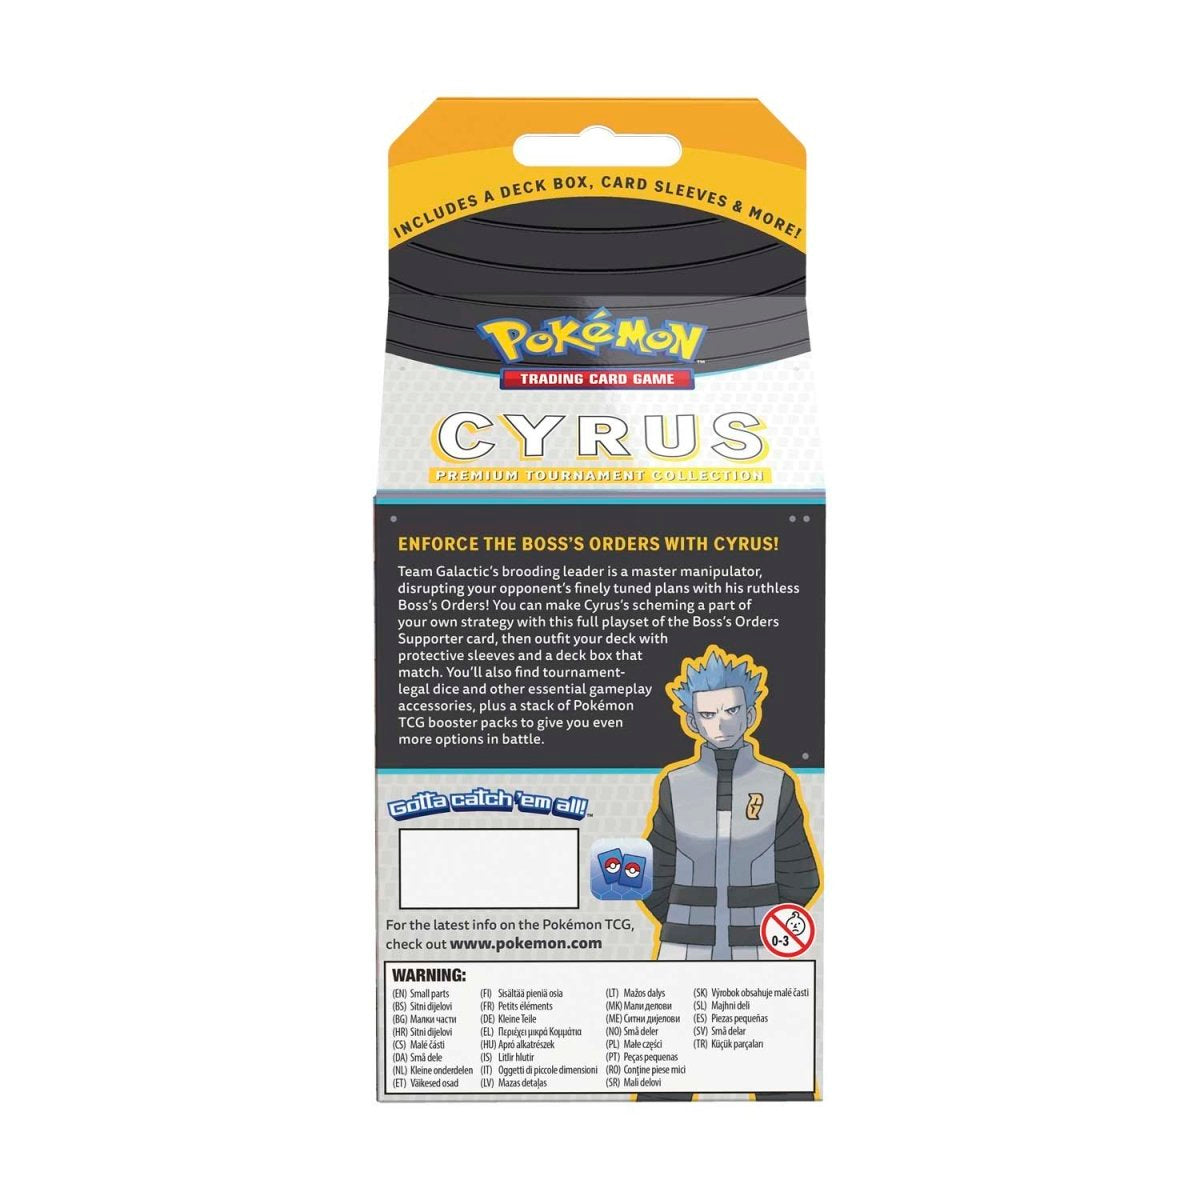 Cyrus Milk Box